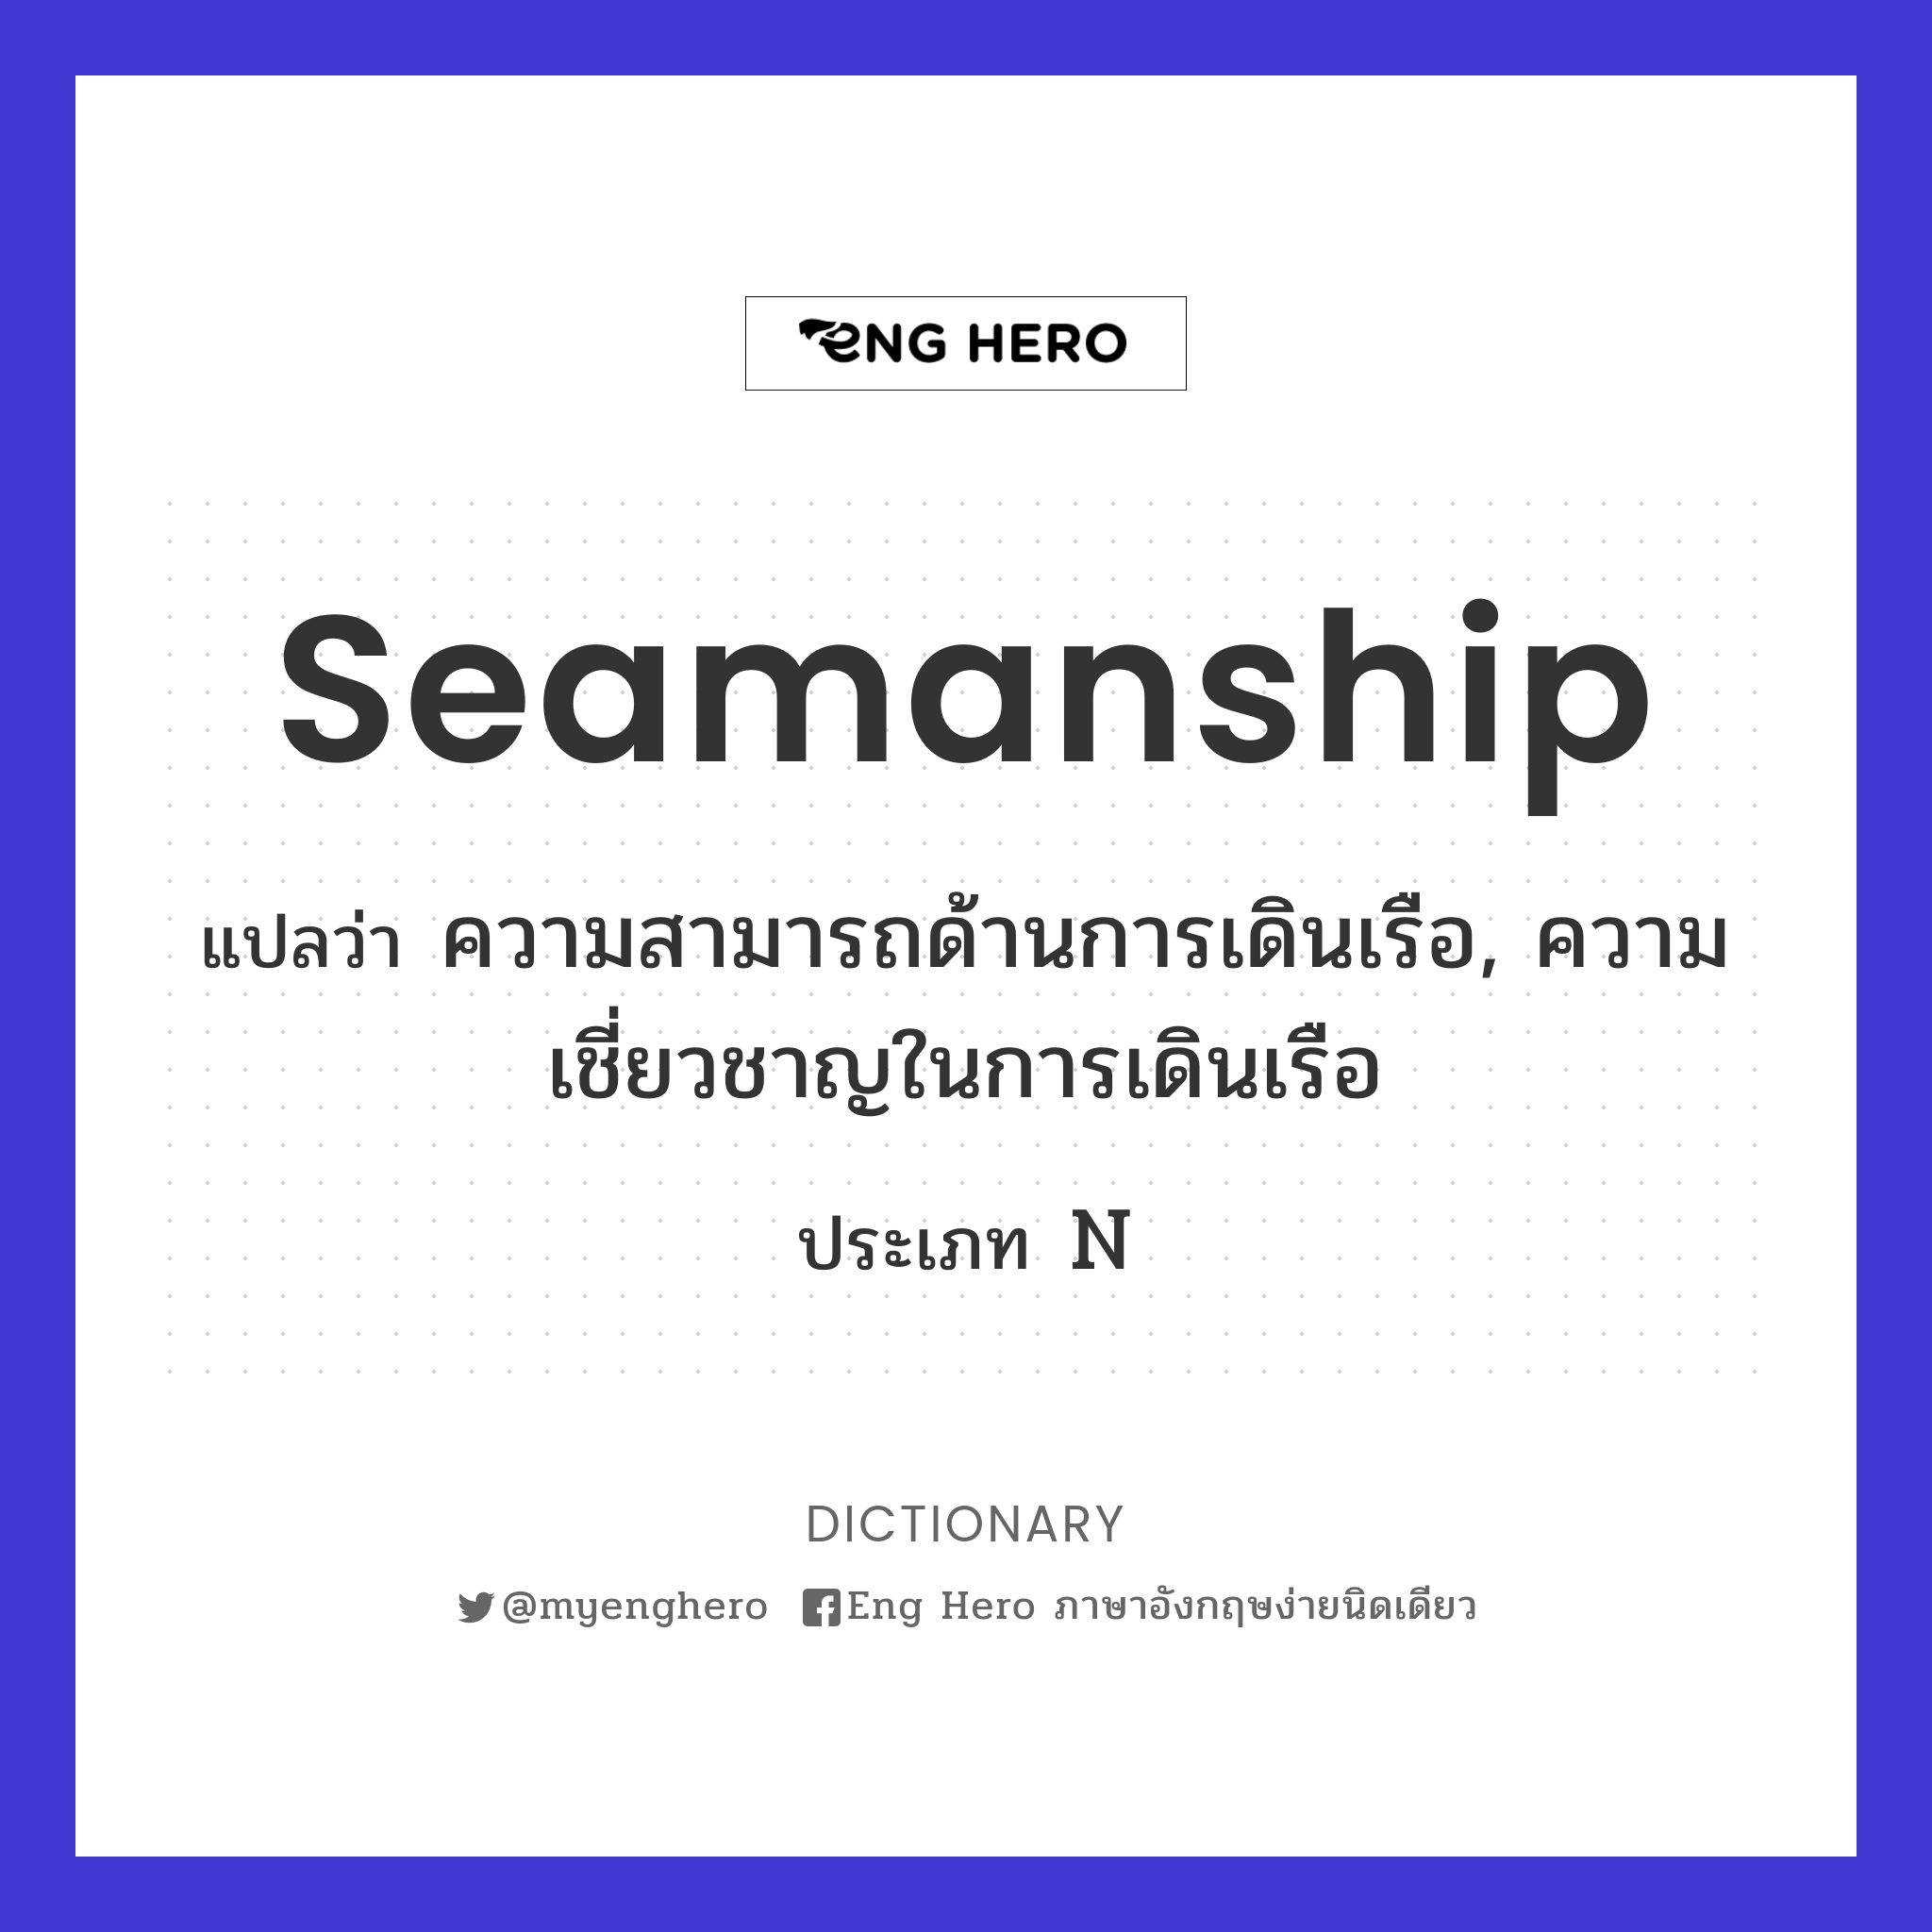 seamanship